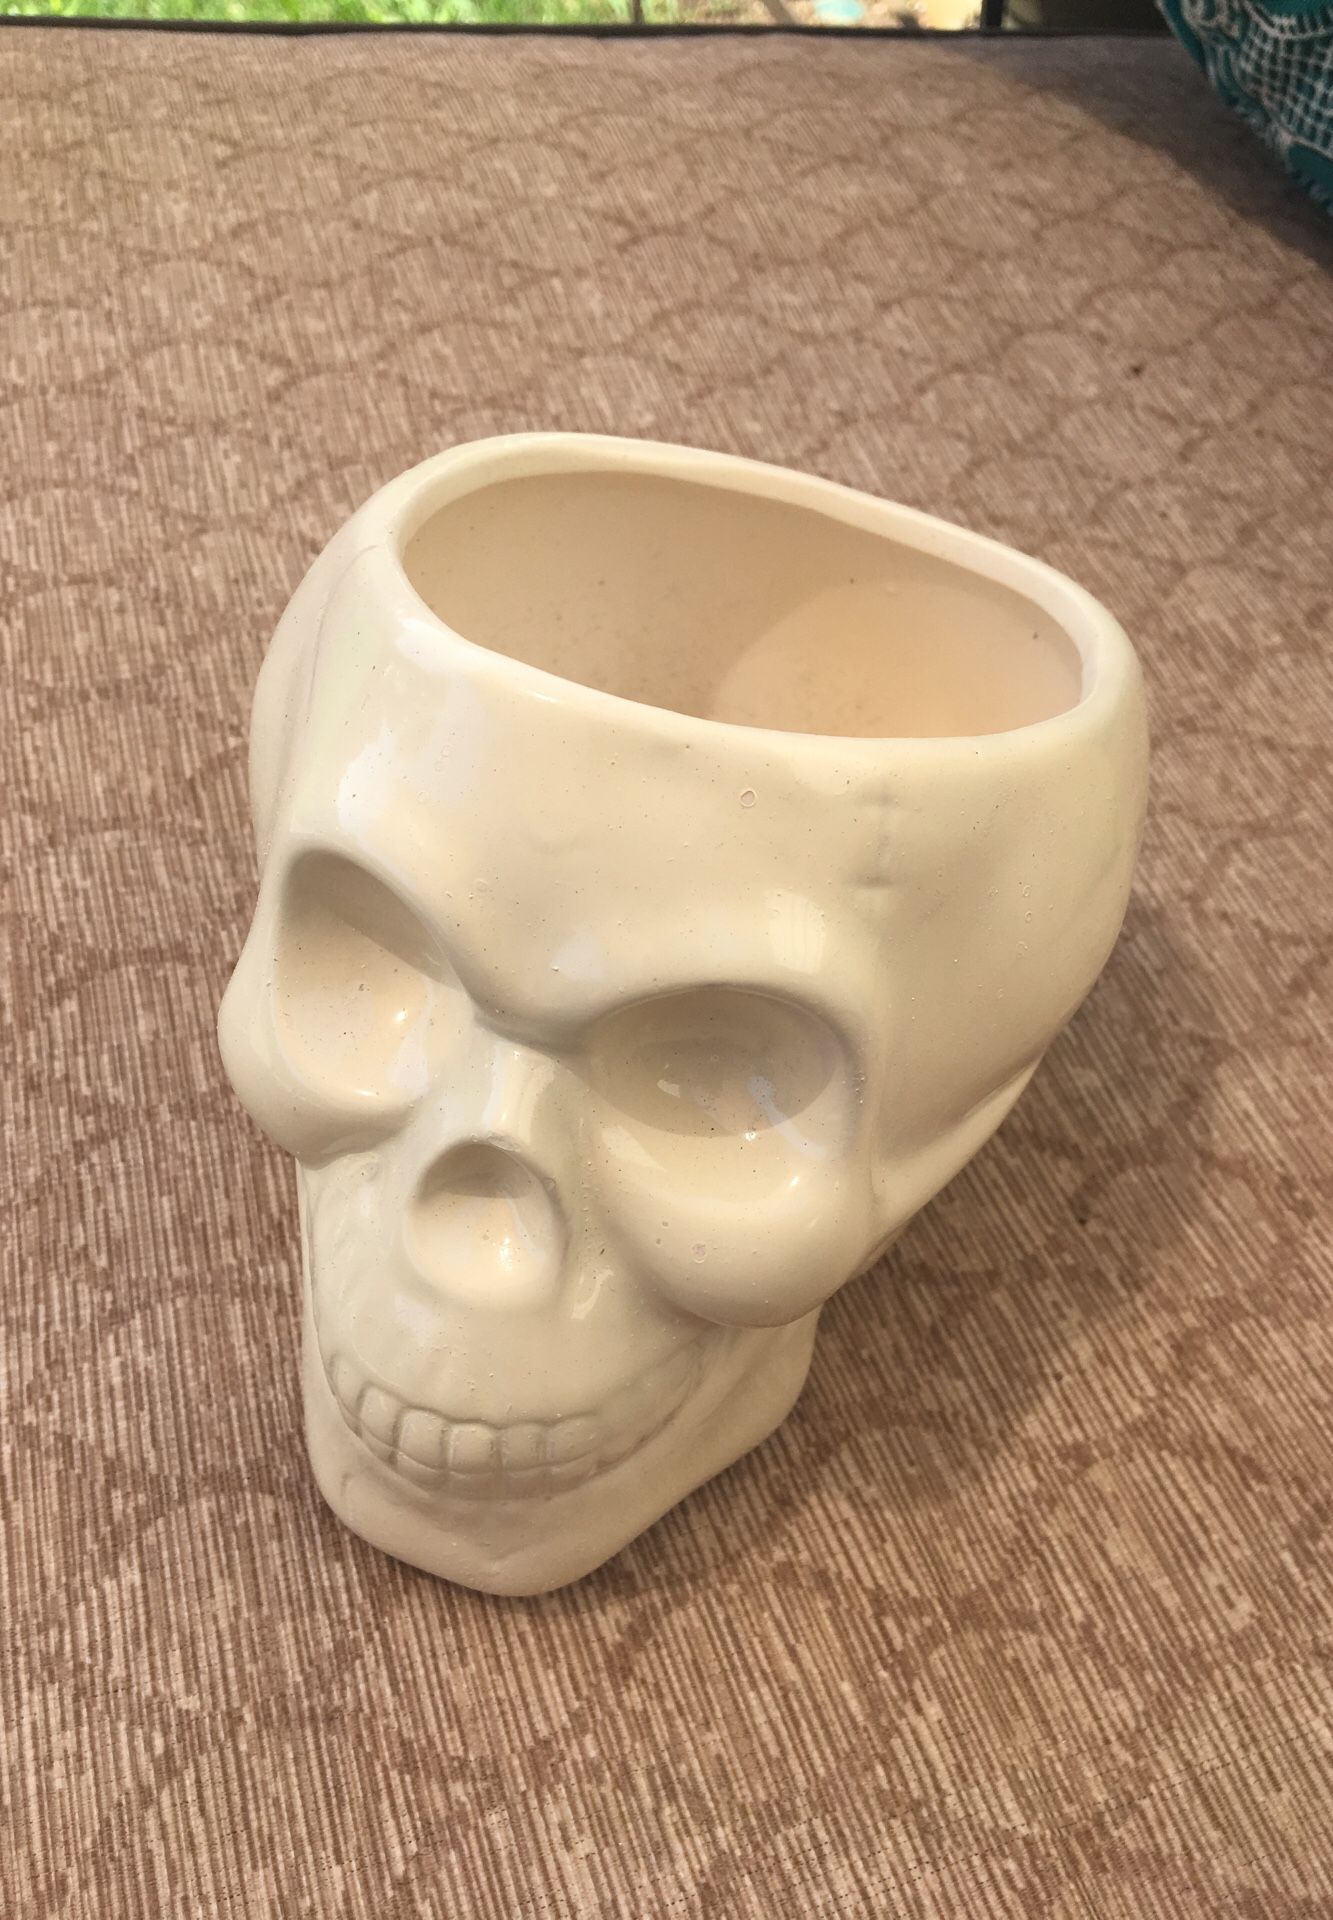 Ceramic skull planter/ garden pot